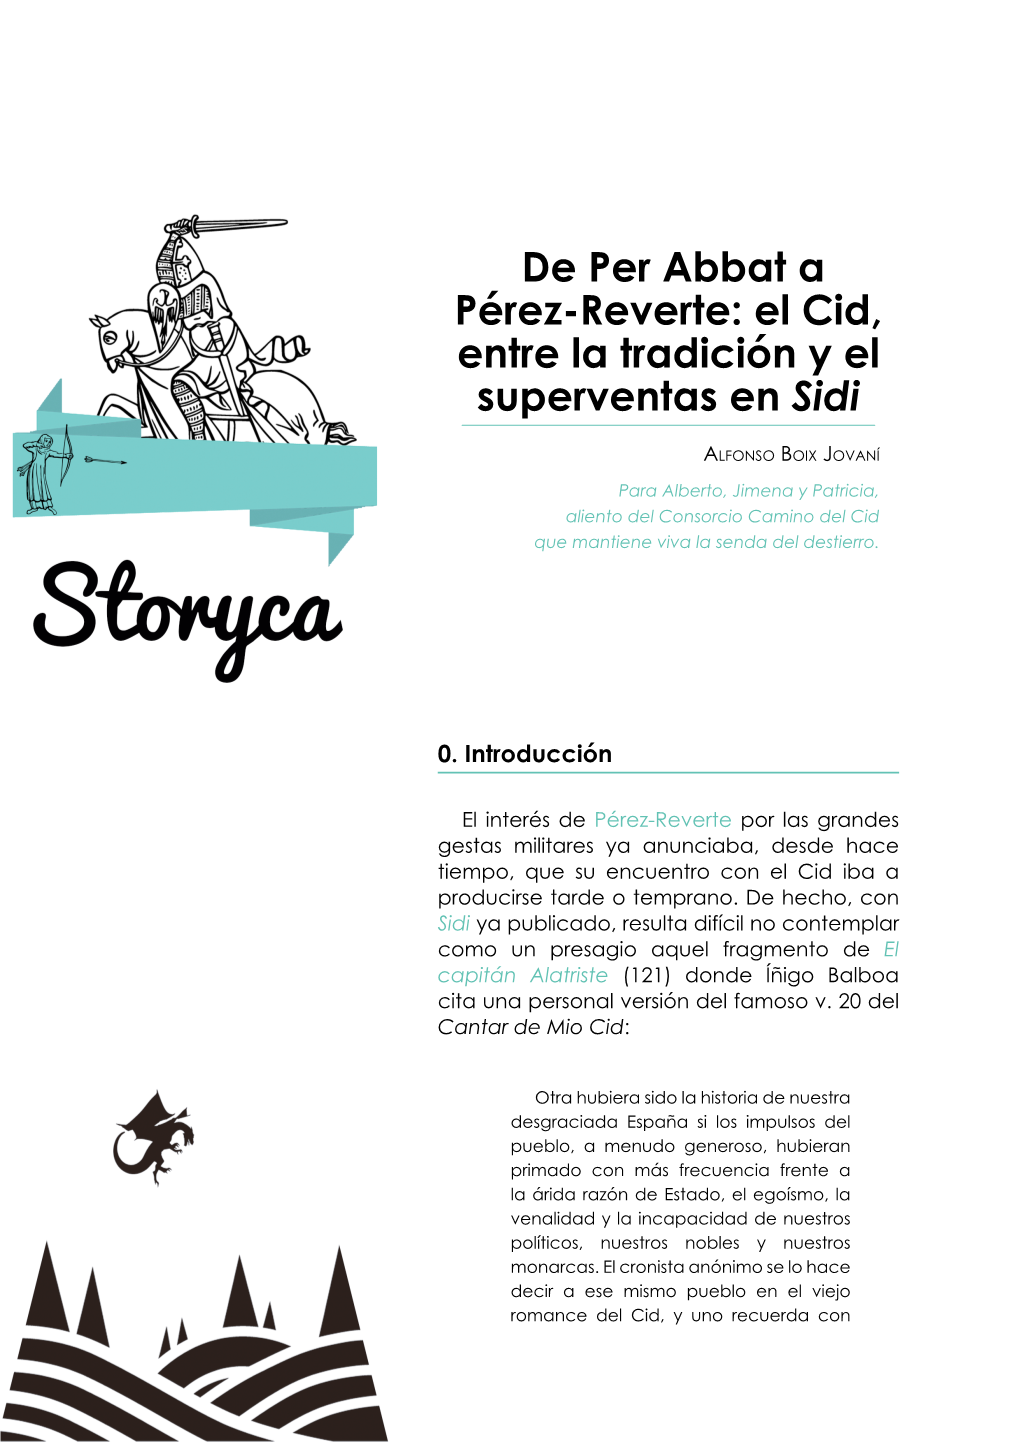 De Per Abbat a Pérez-Reverte: El Cid, Entre La Tradición Y El Superventas En Sidi